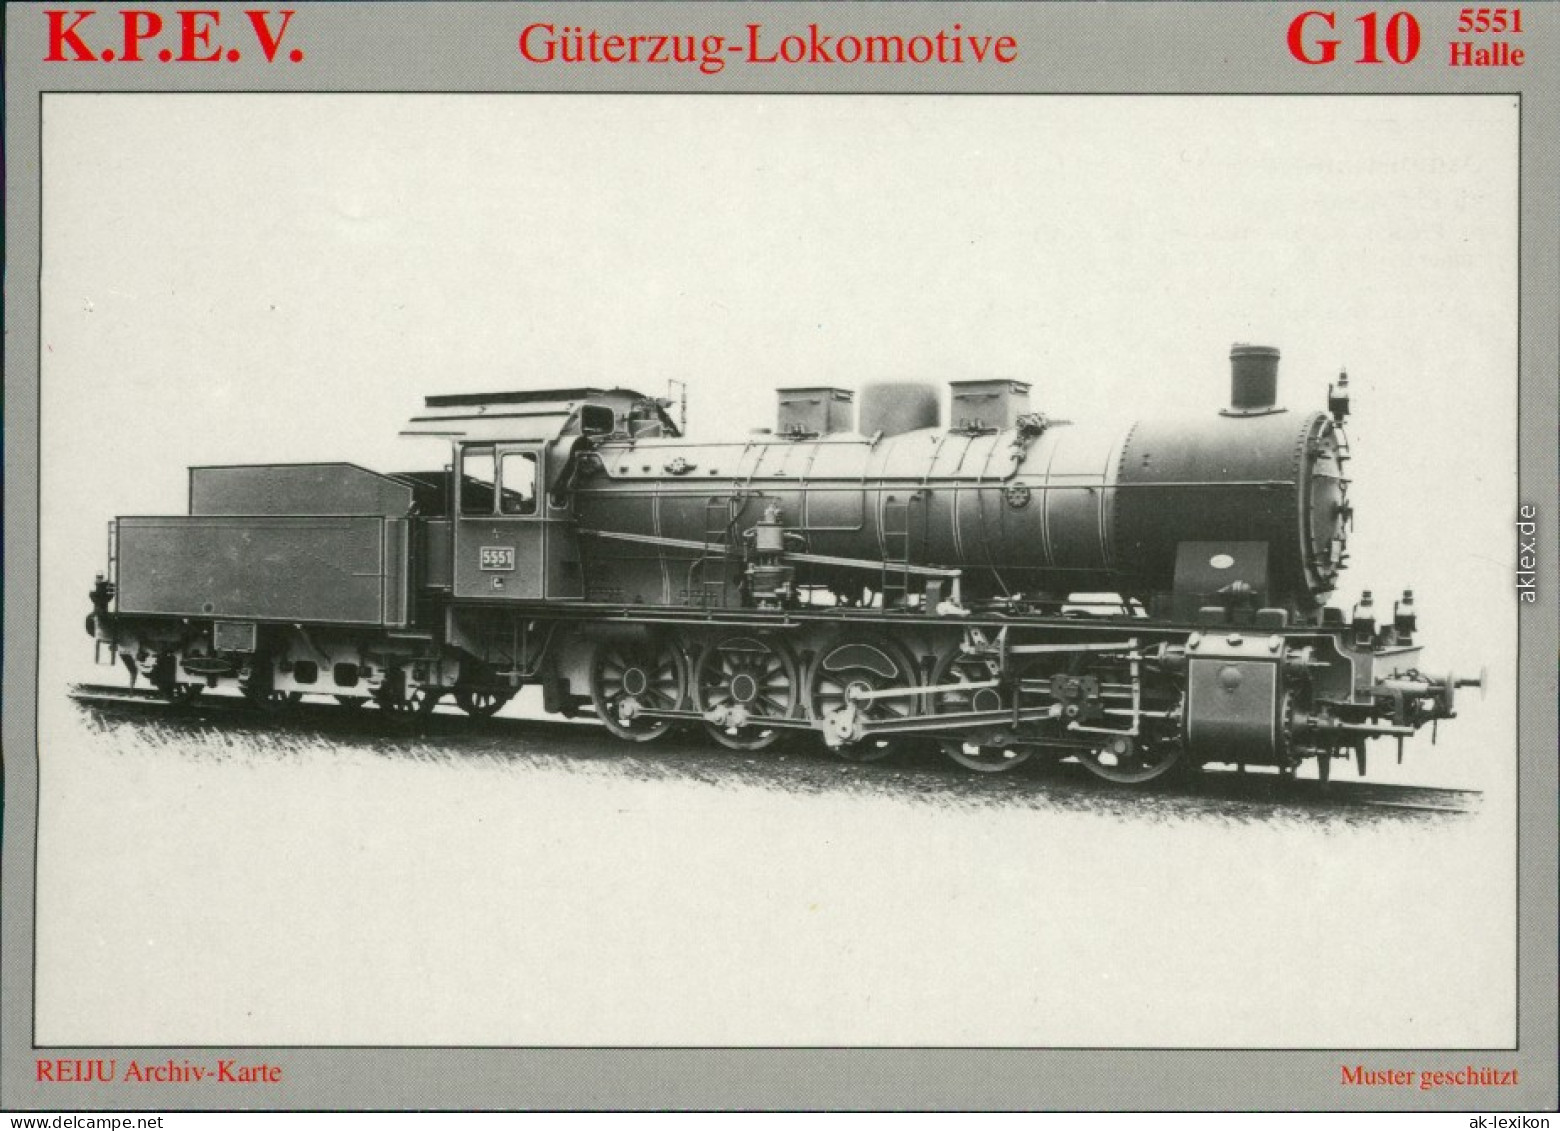 Ansichtskarte  Dampf-Güterzuglokomotive G 10 "5551 Halle" 1990 - Trains